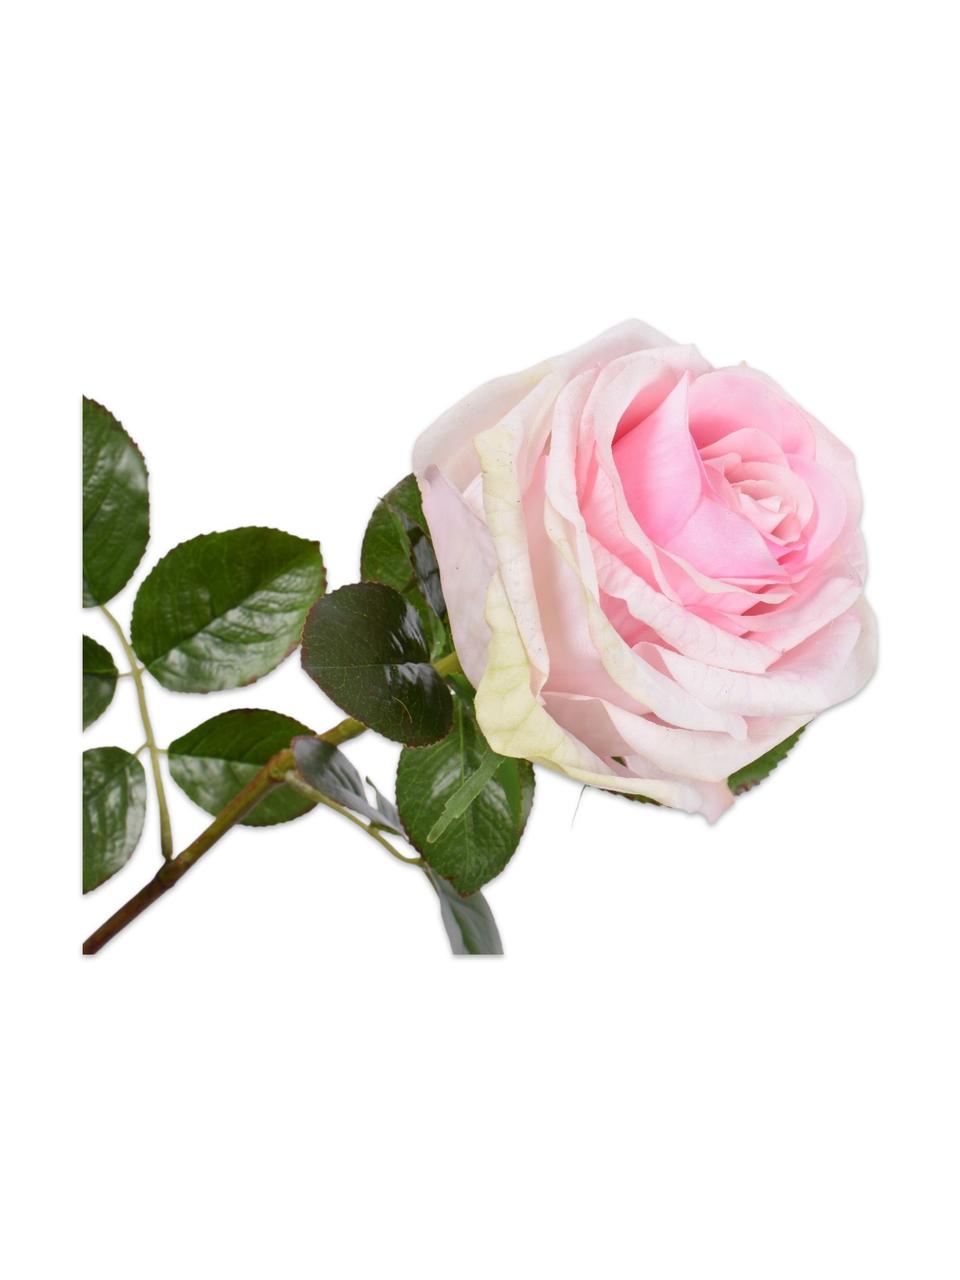 Květinová dekorace růže, bílá/růžová, 2 ks, Umělá hmota, kovový drát, Bílá, růžová, D 68 cm